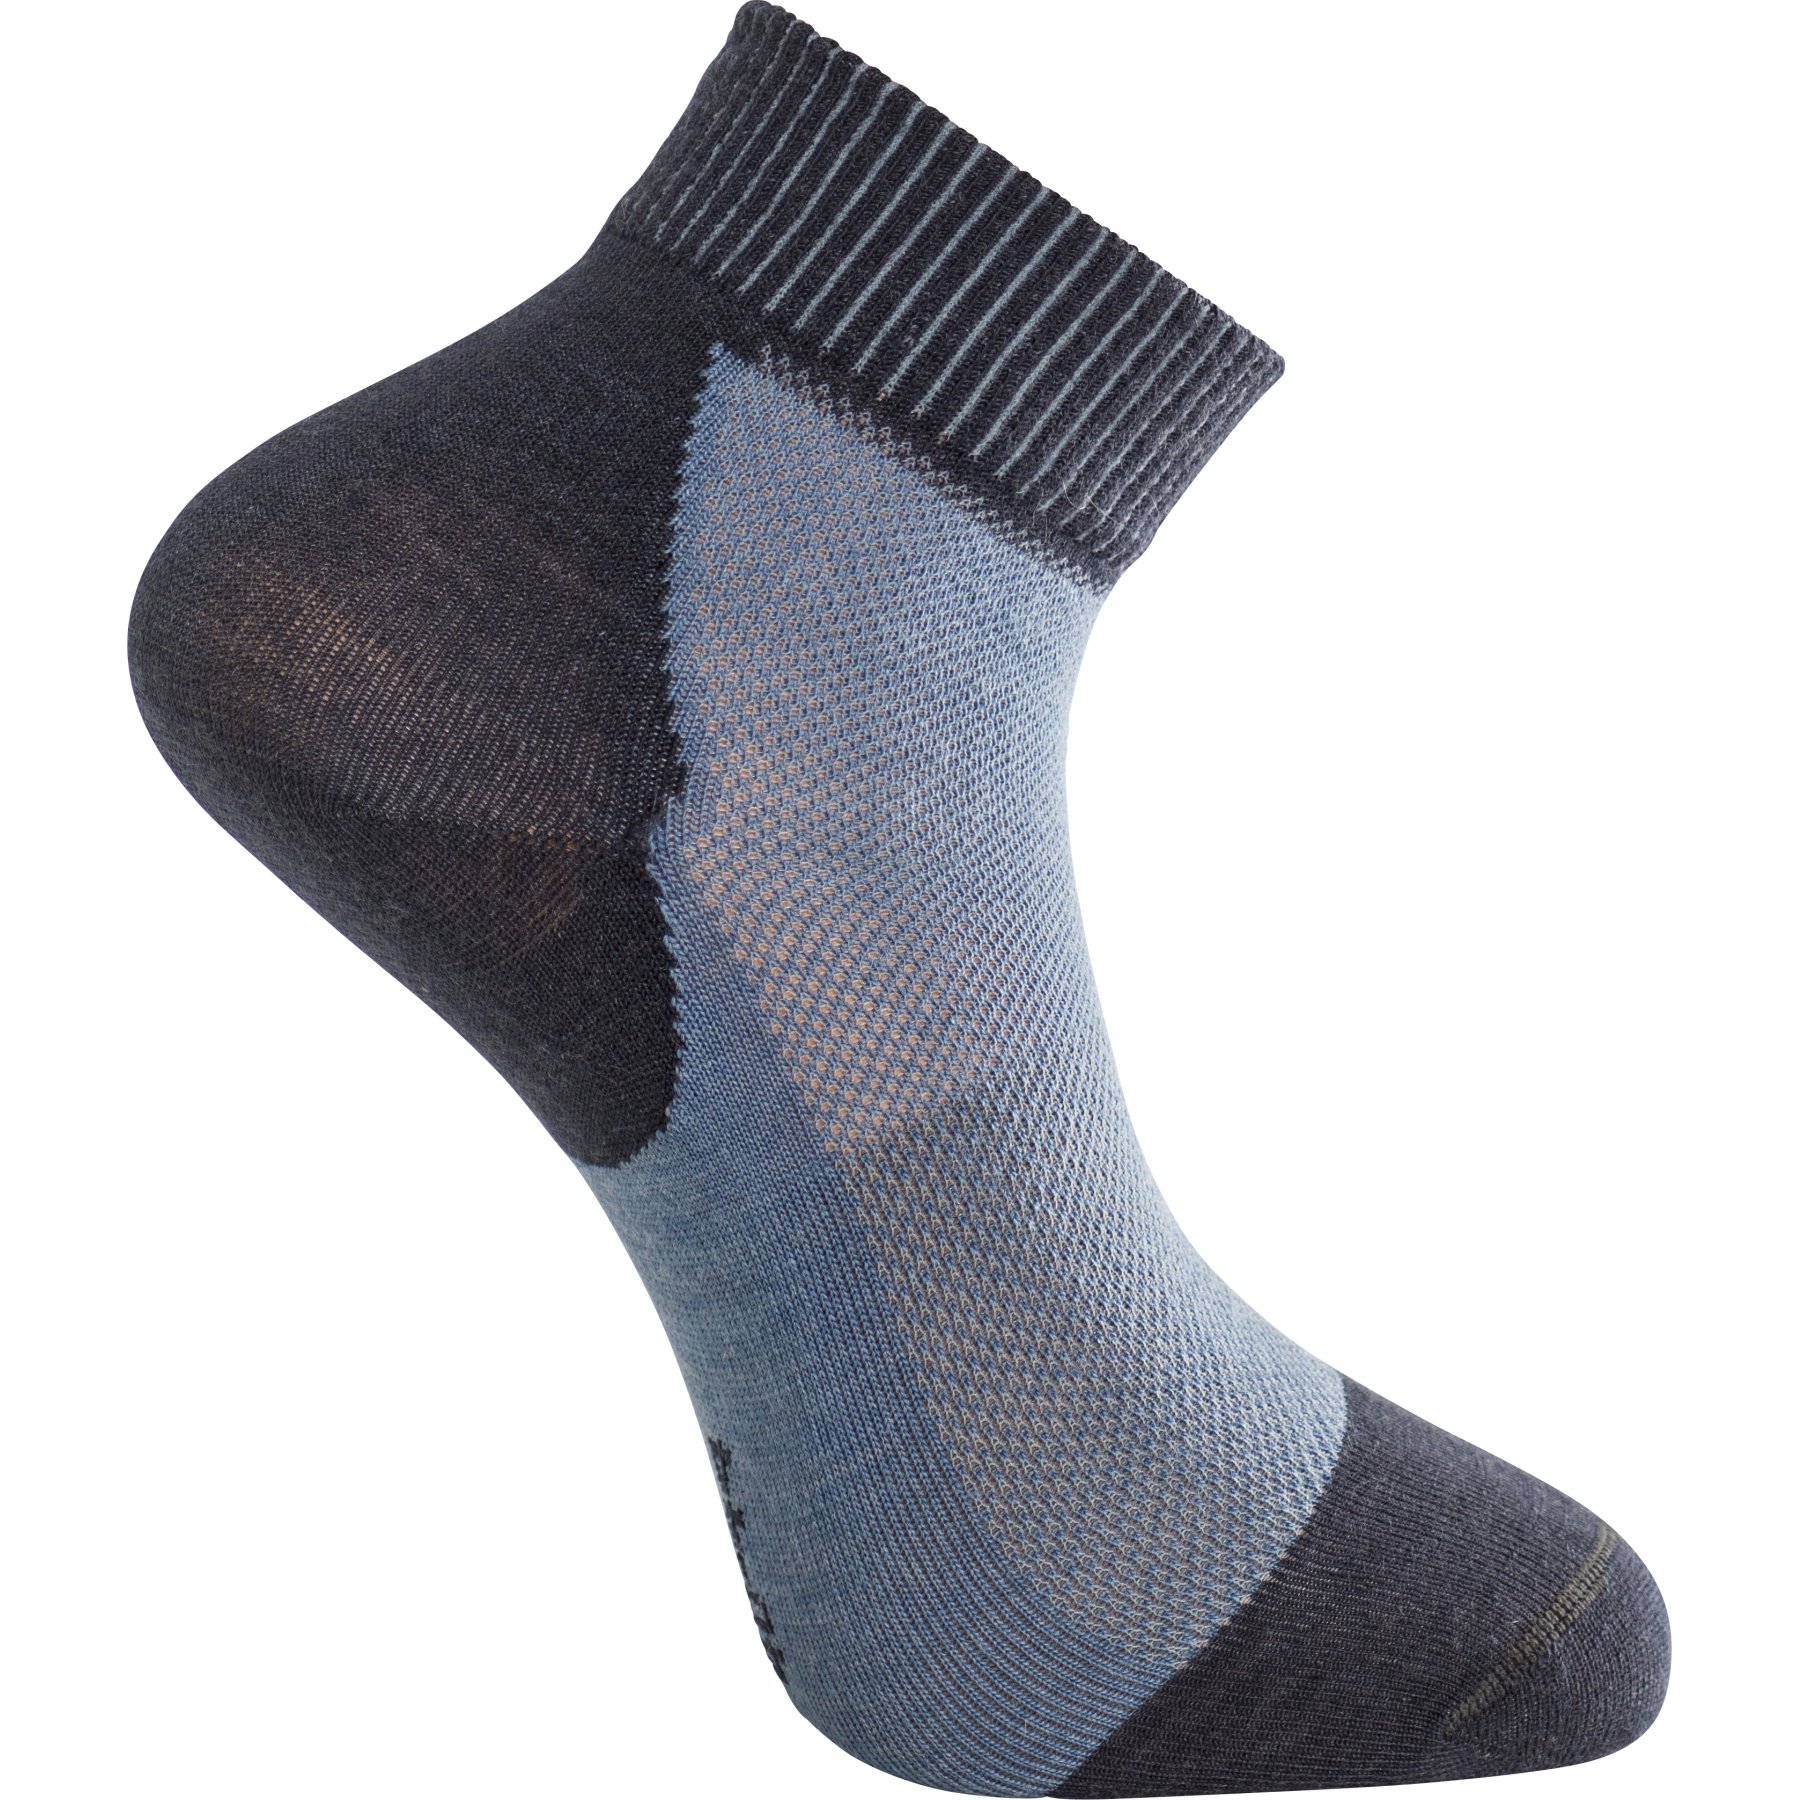 Productfoto van Woolpower Skilled Liner Short Socks - dark navy-nordic blue